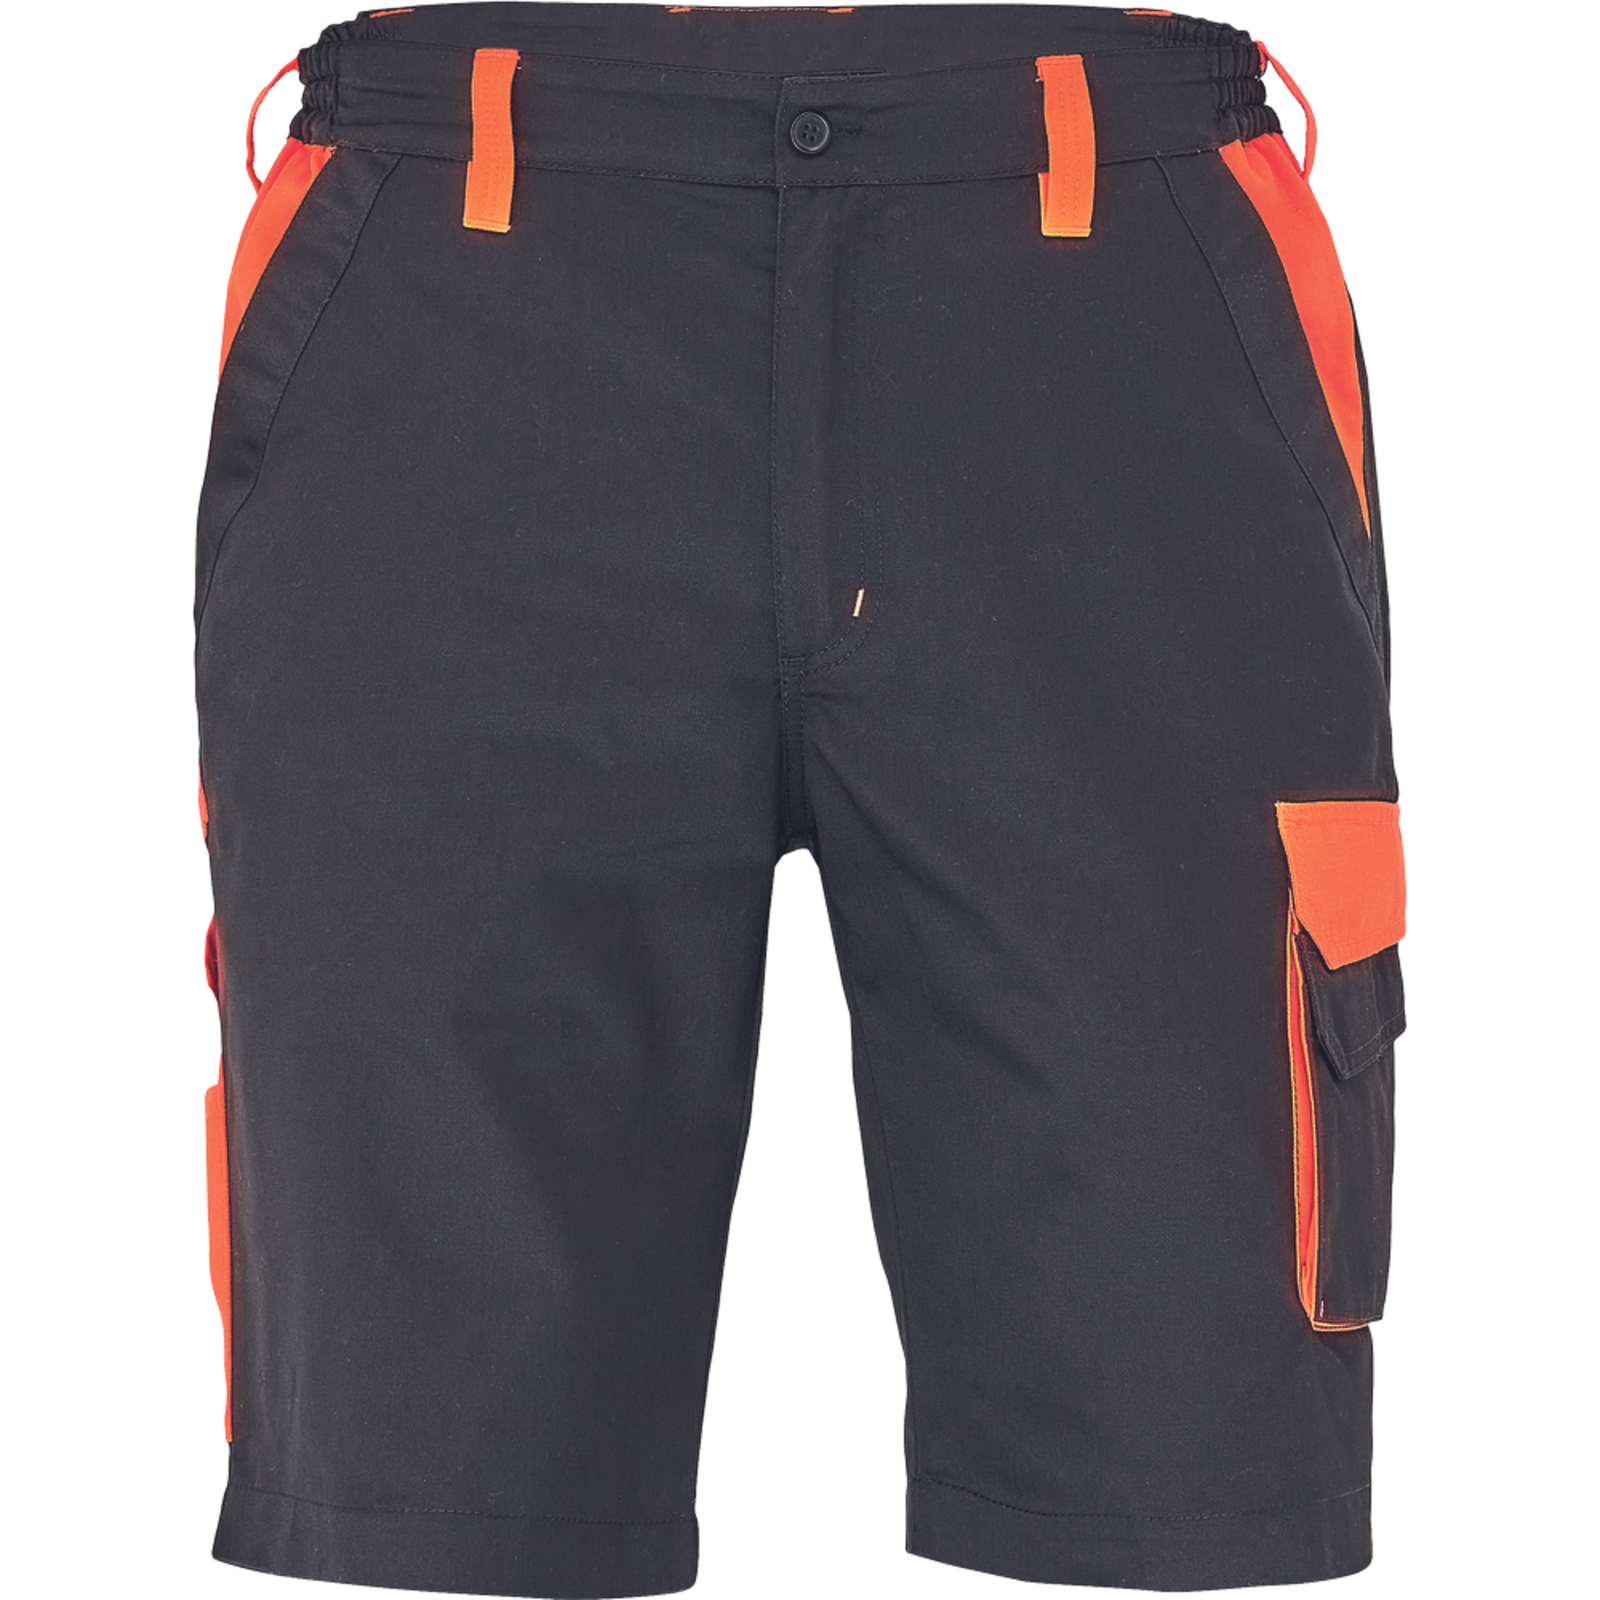 Pánske šortky Cerva Max Vivo - veľkosť: 60, farba: čierna/oranžová